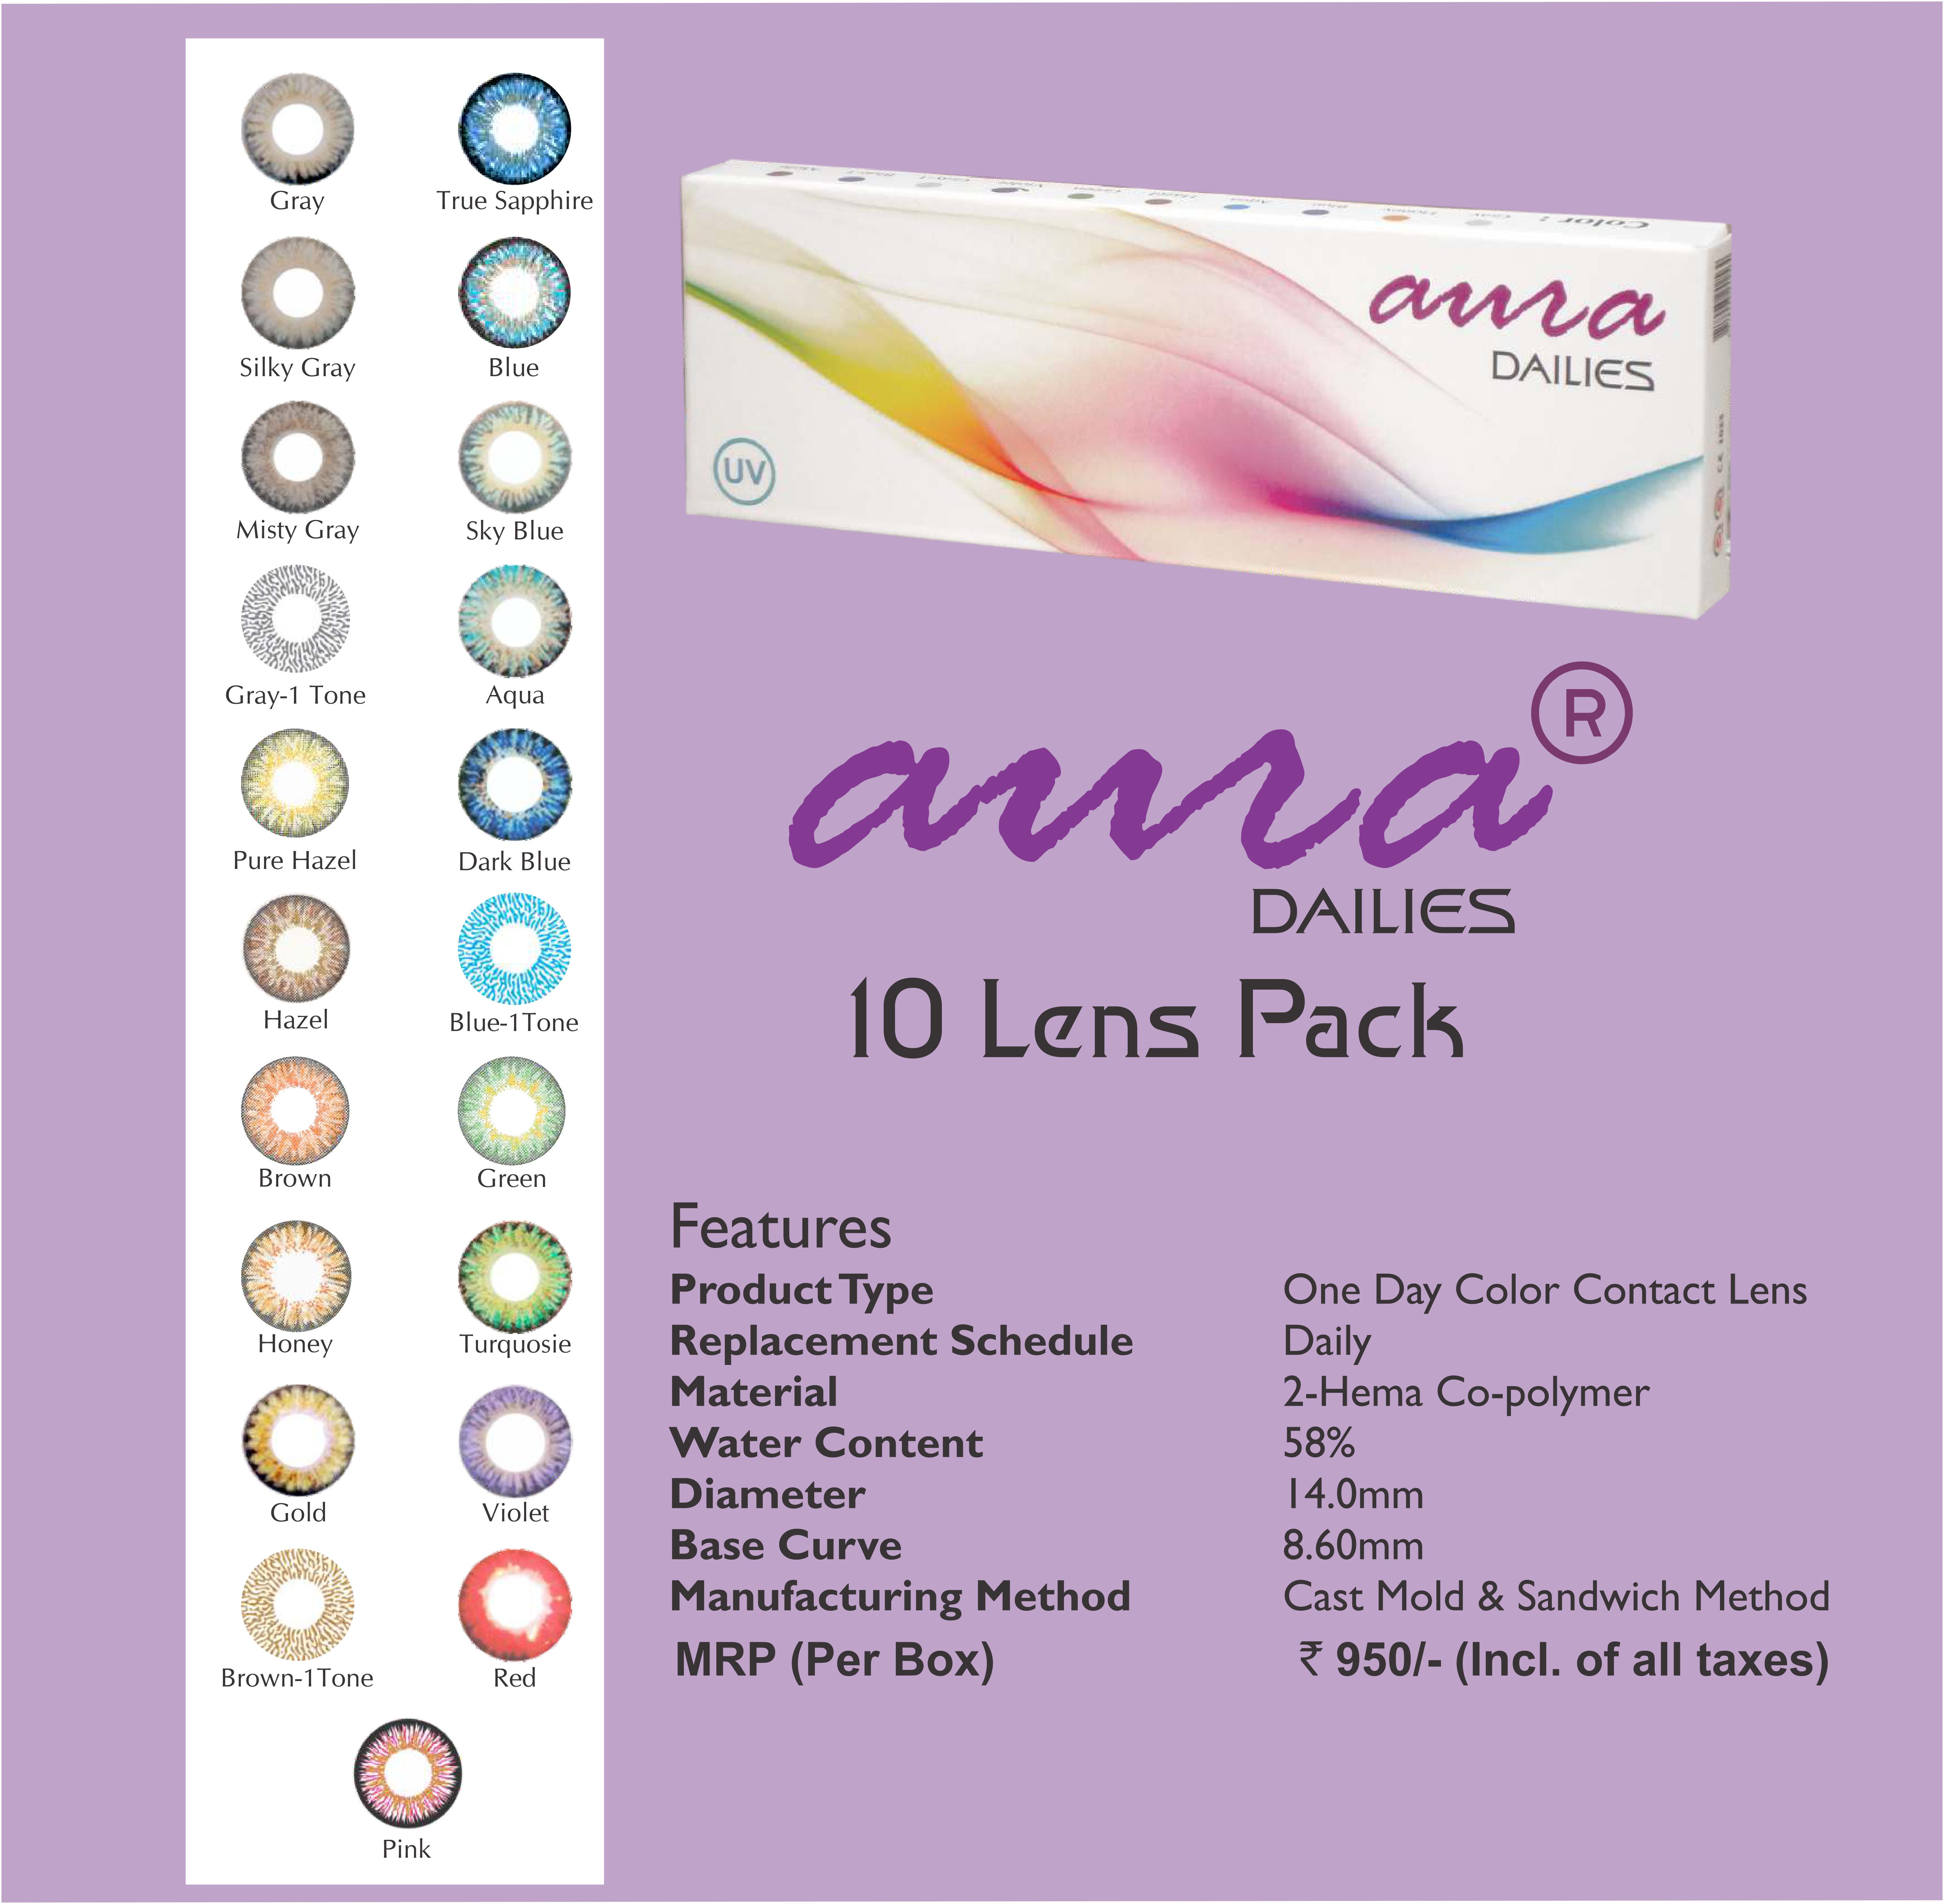 Aura Dailies 10 lens pack